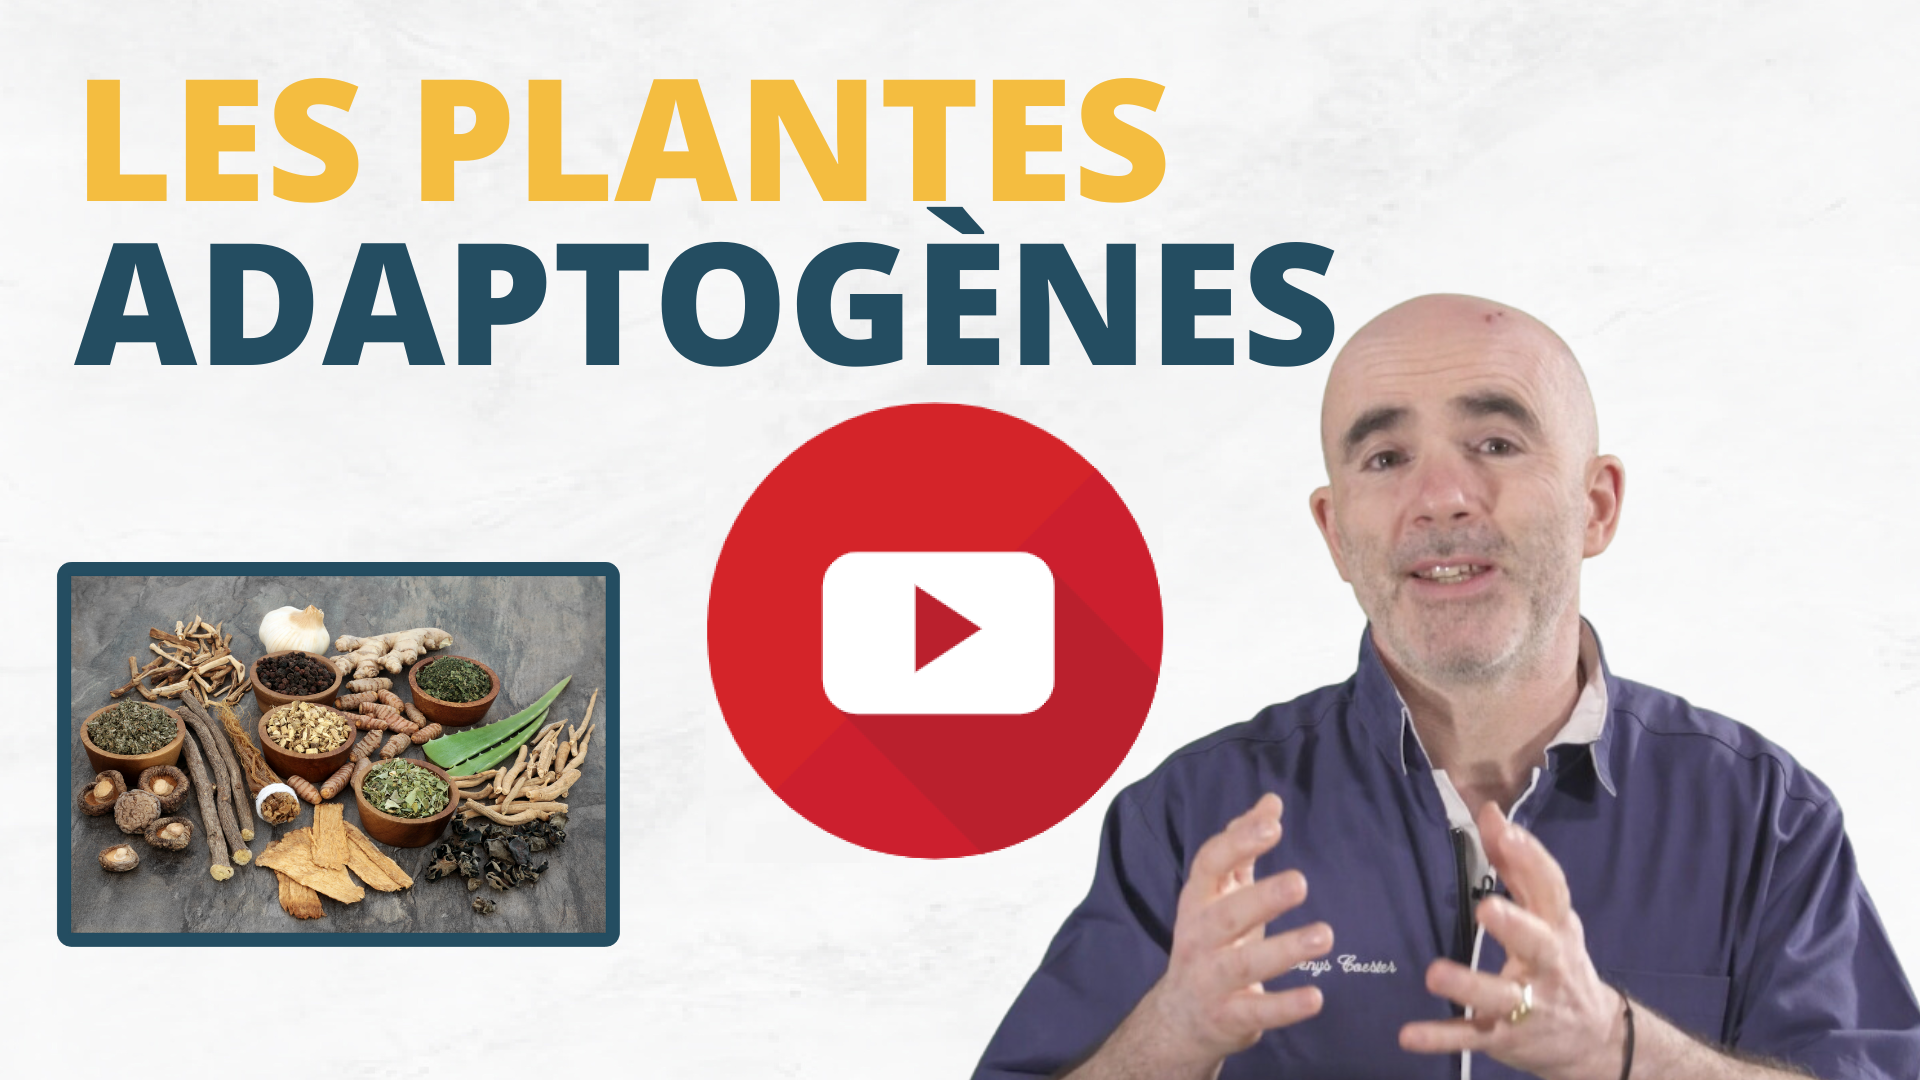 Les plantes adaptogènes